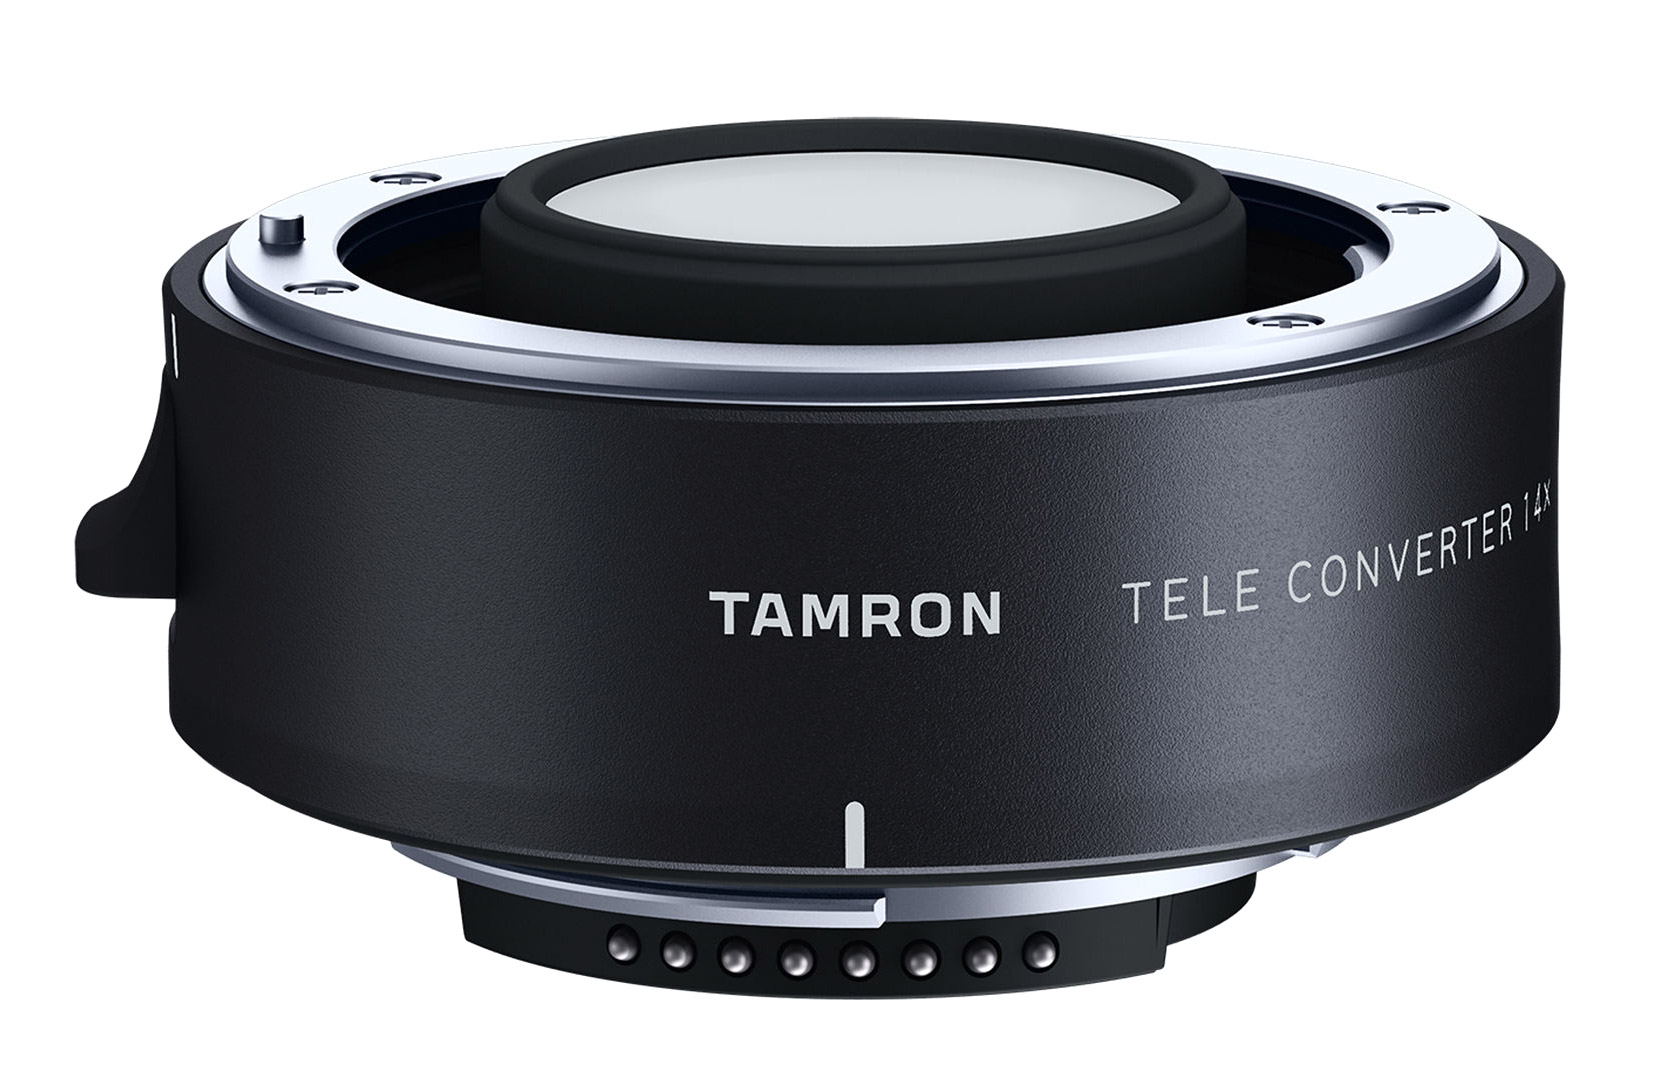 Tamron 1.4x TC-X14